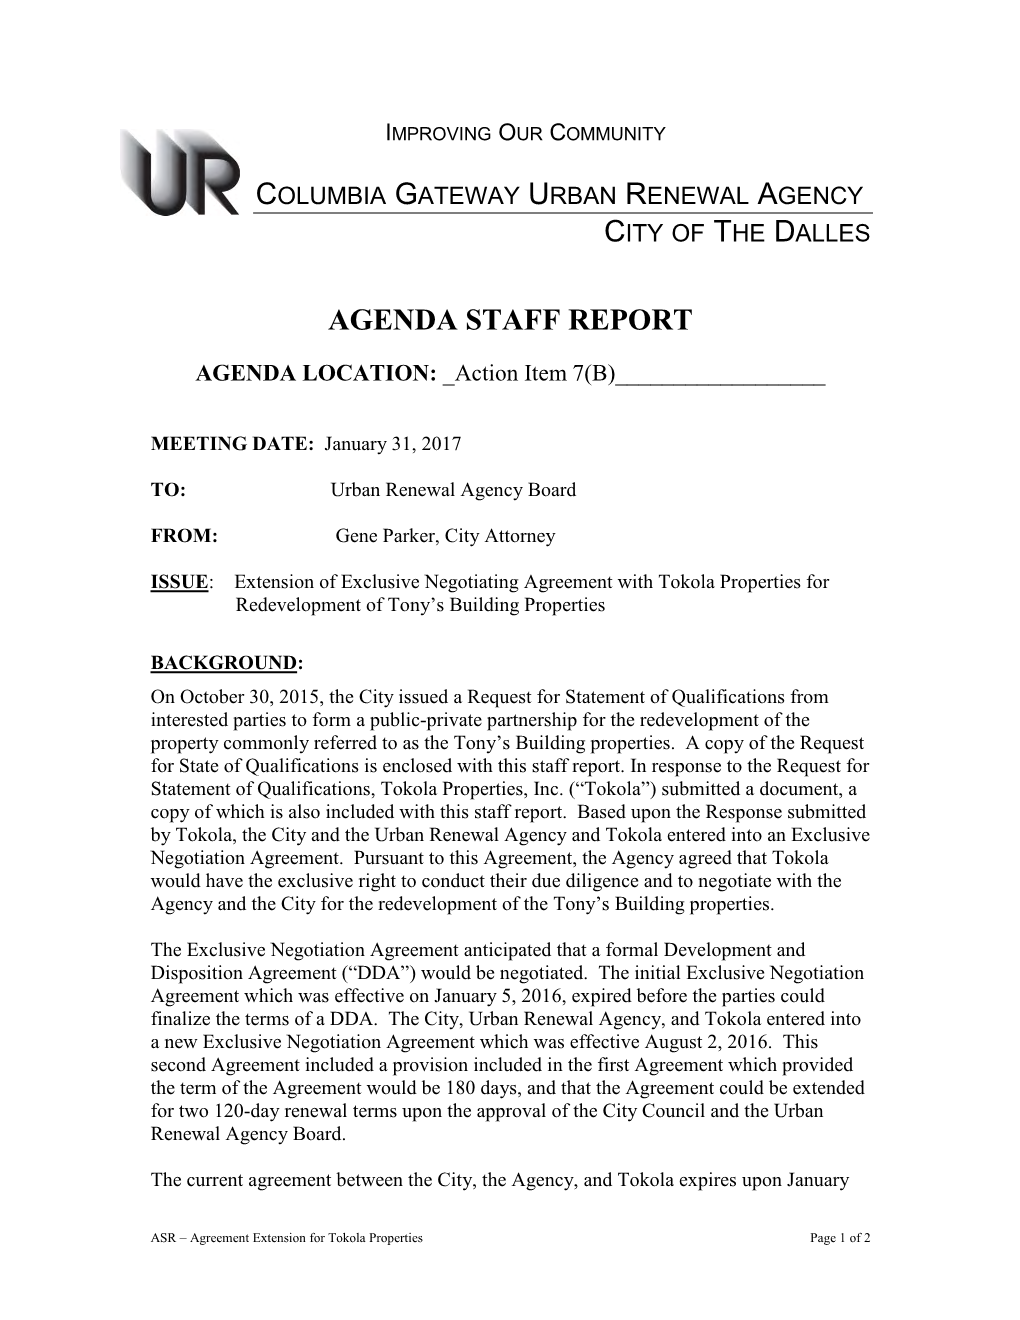 Agenda Staff Report